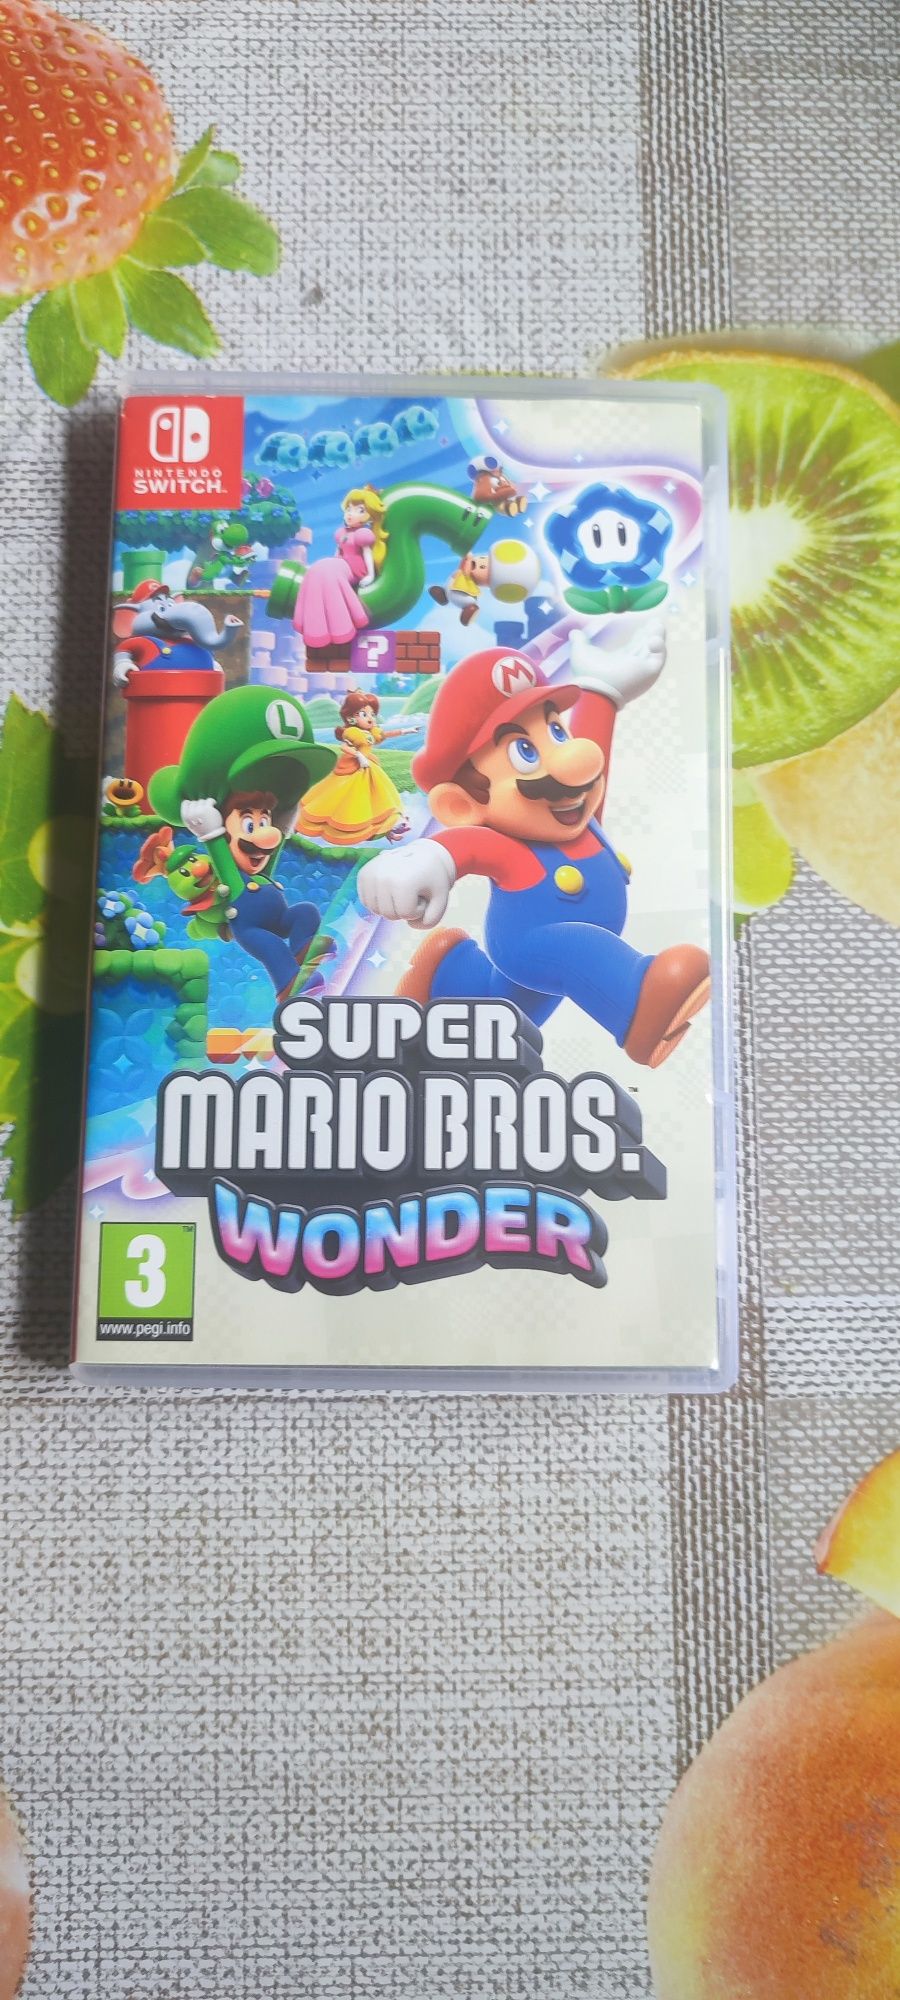 Sprzedam lub wymienię Grę Super Mario Bros Wonder